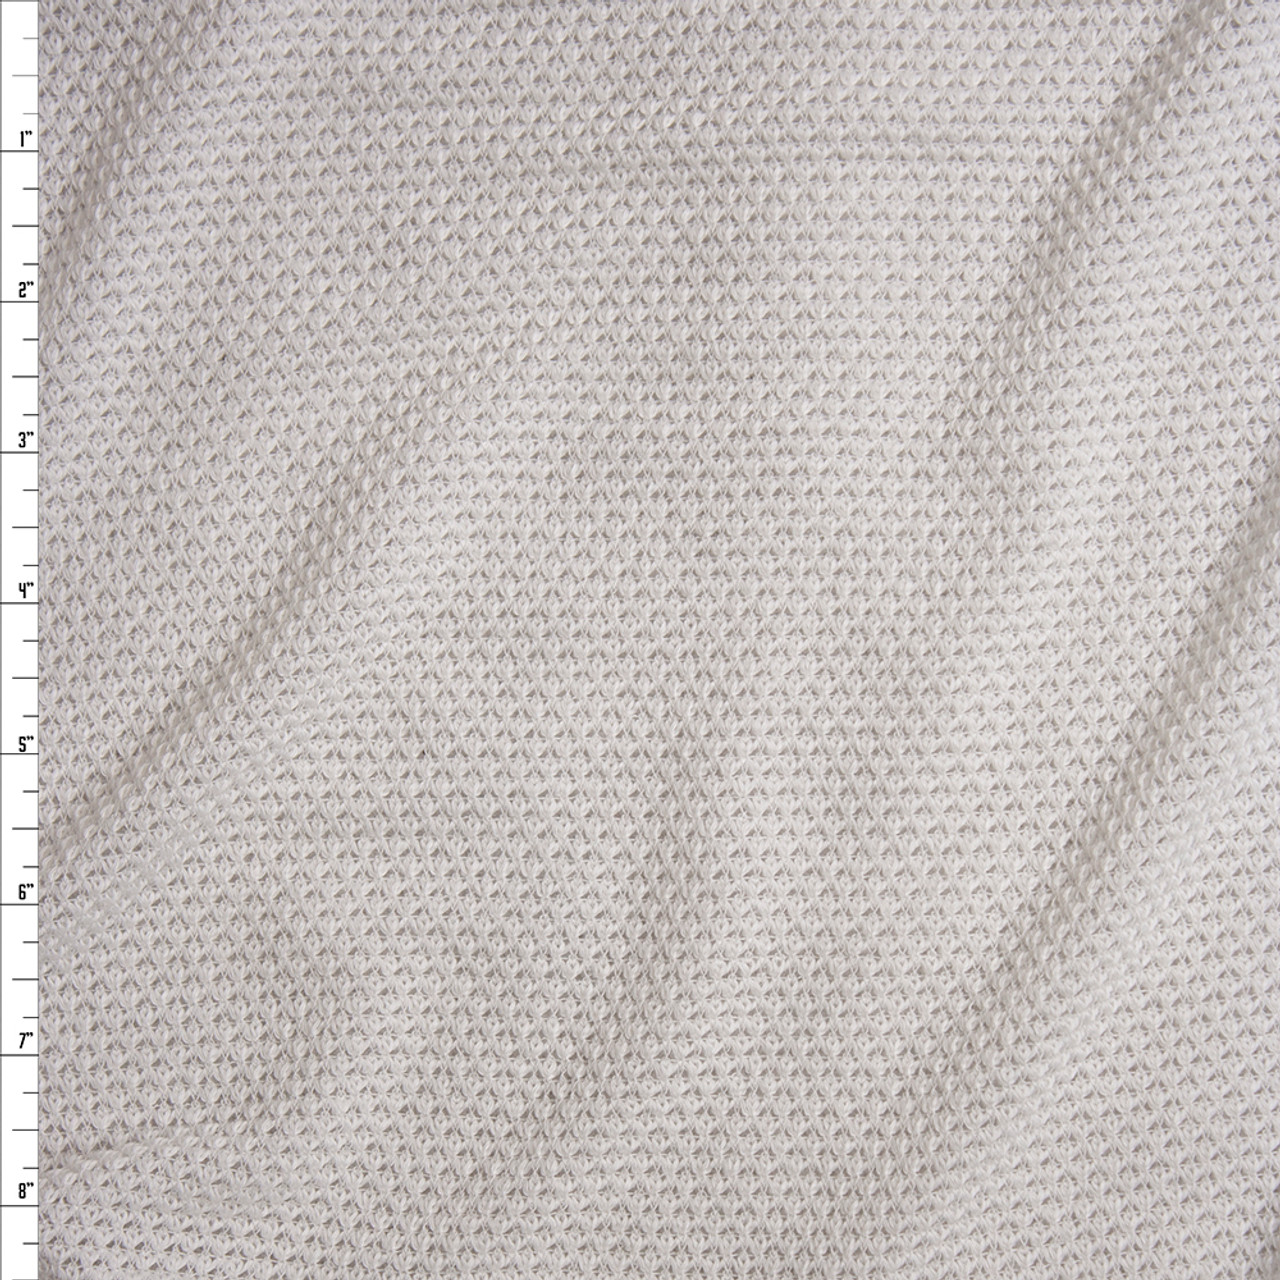  White Knit Fabric, Rayon Jersey Knit Fabric, Causal Jersey Knit  Fabric, Knitting Fabric by The Yard - 1 Yard